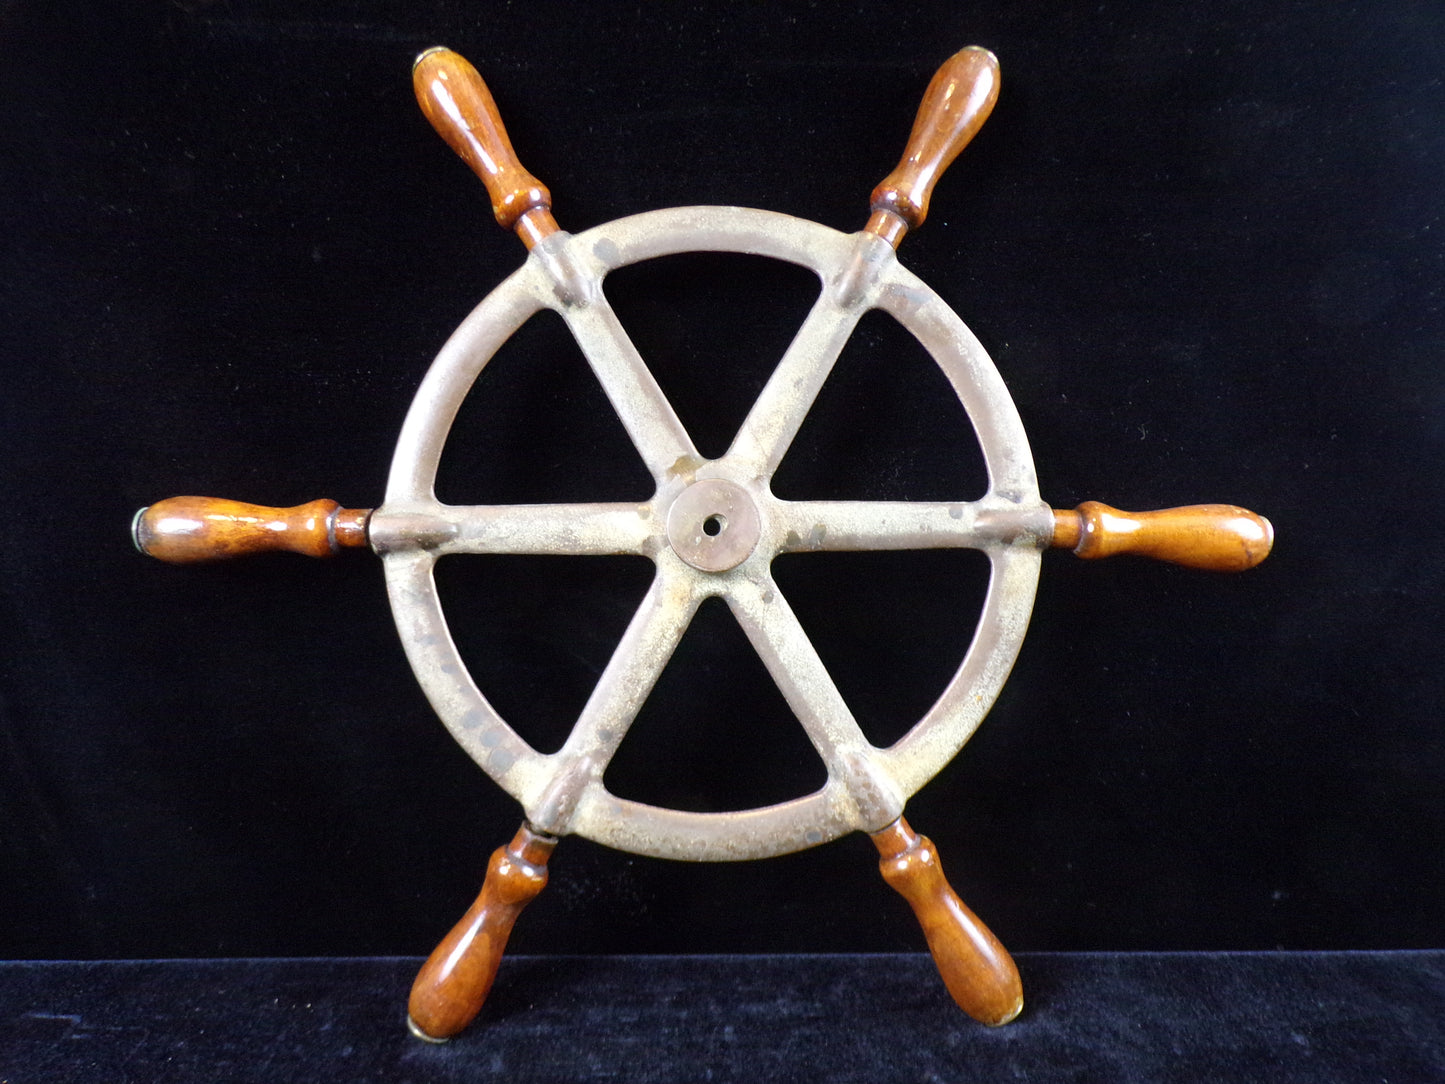 Ship Wheel, 16 3/4" Brass Spokes with Six Wooden Spoke Handles